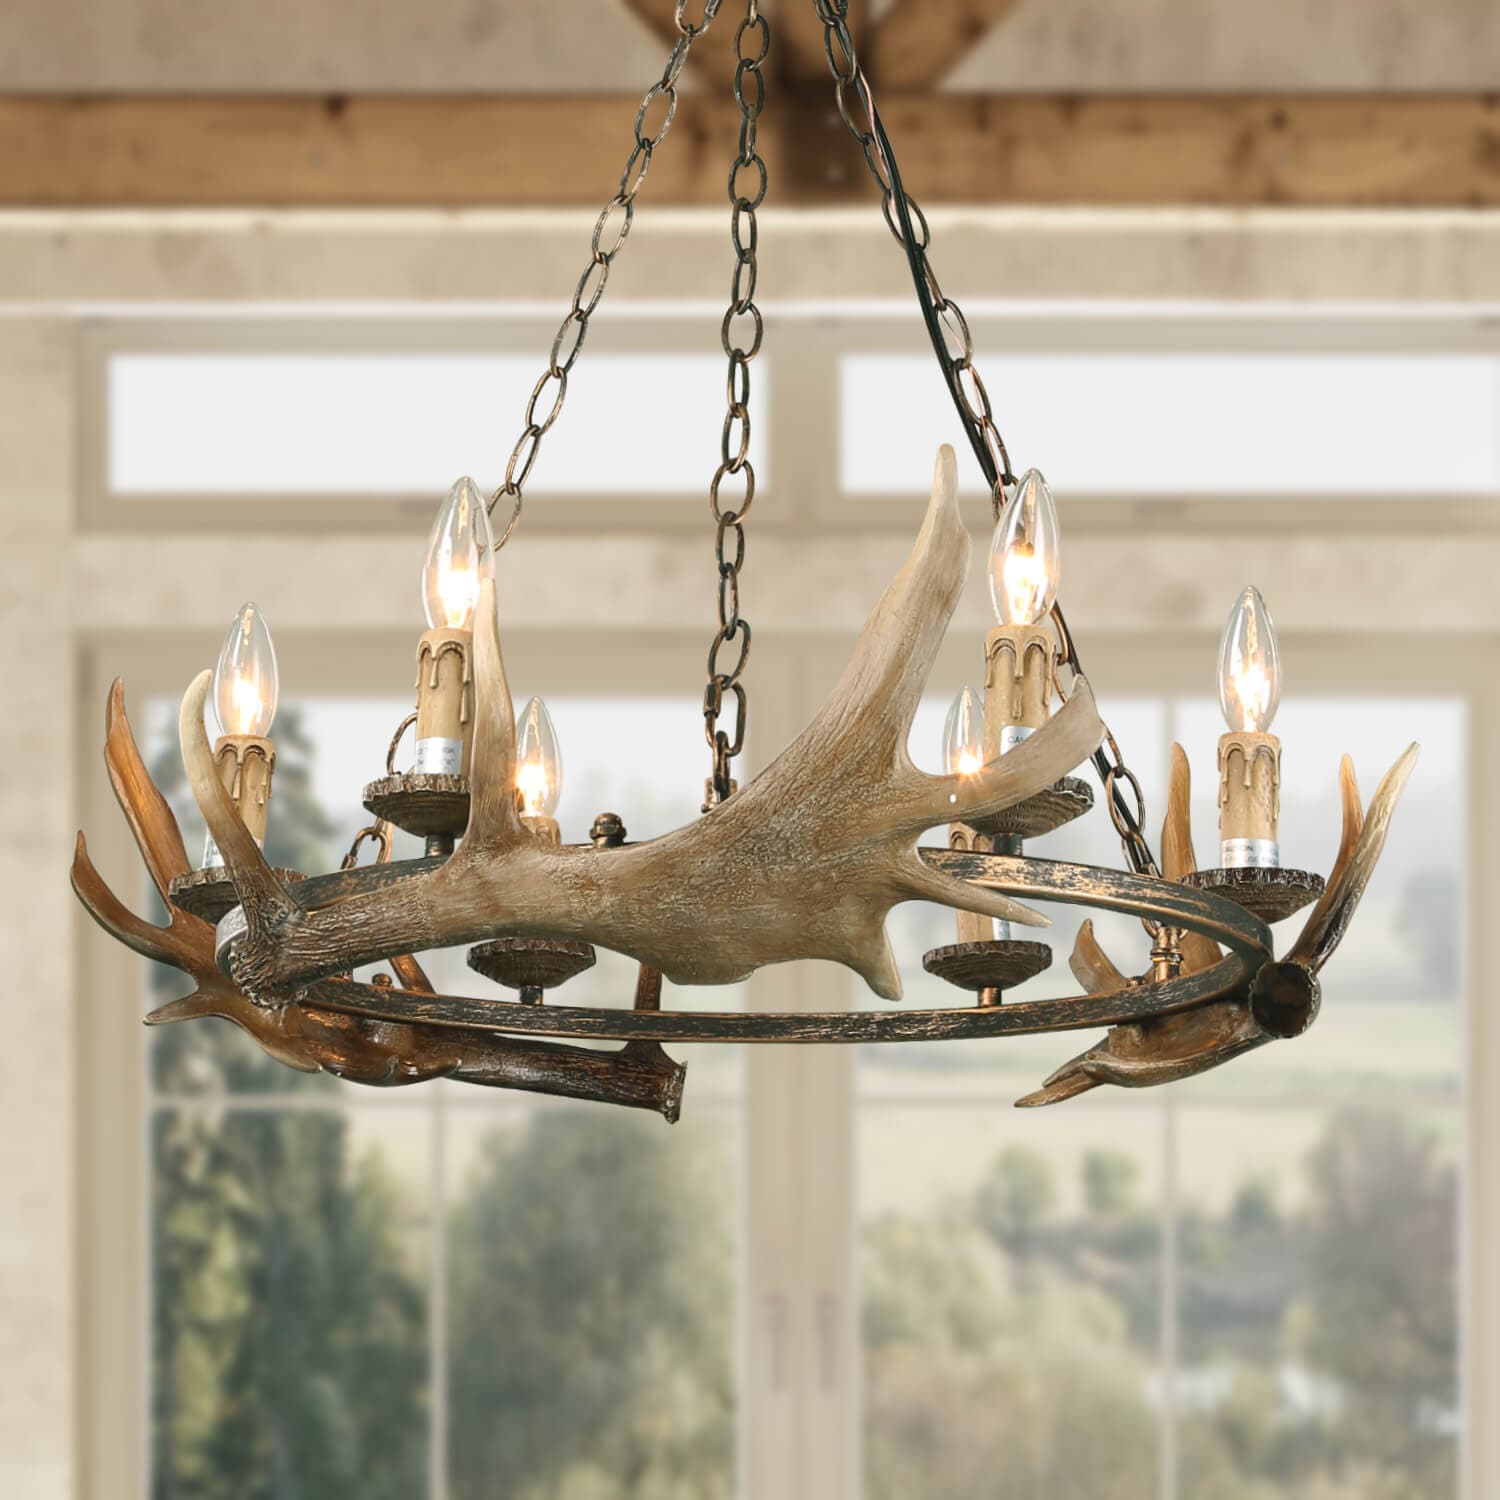  Machine Transparent Acrylic Antler Chandelier Lighting Retro  Deer Horn Lamps Home Decoration Lighting No Broken (Size : 8 Lights Golden)  : Tools & Home Improvement